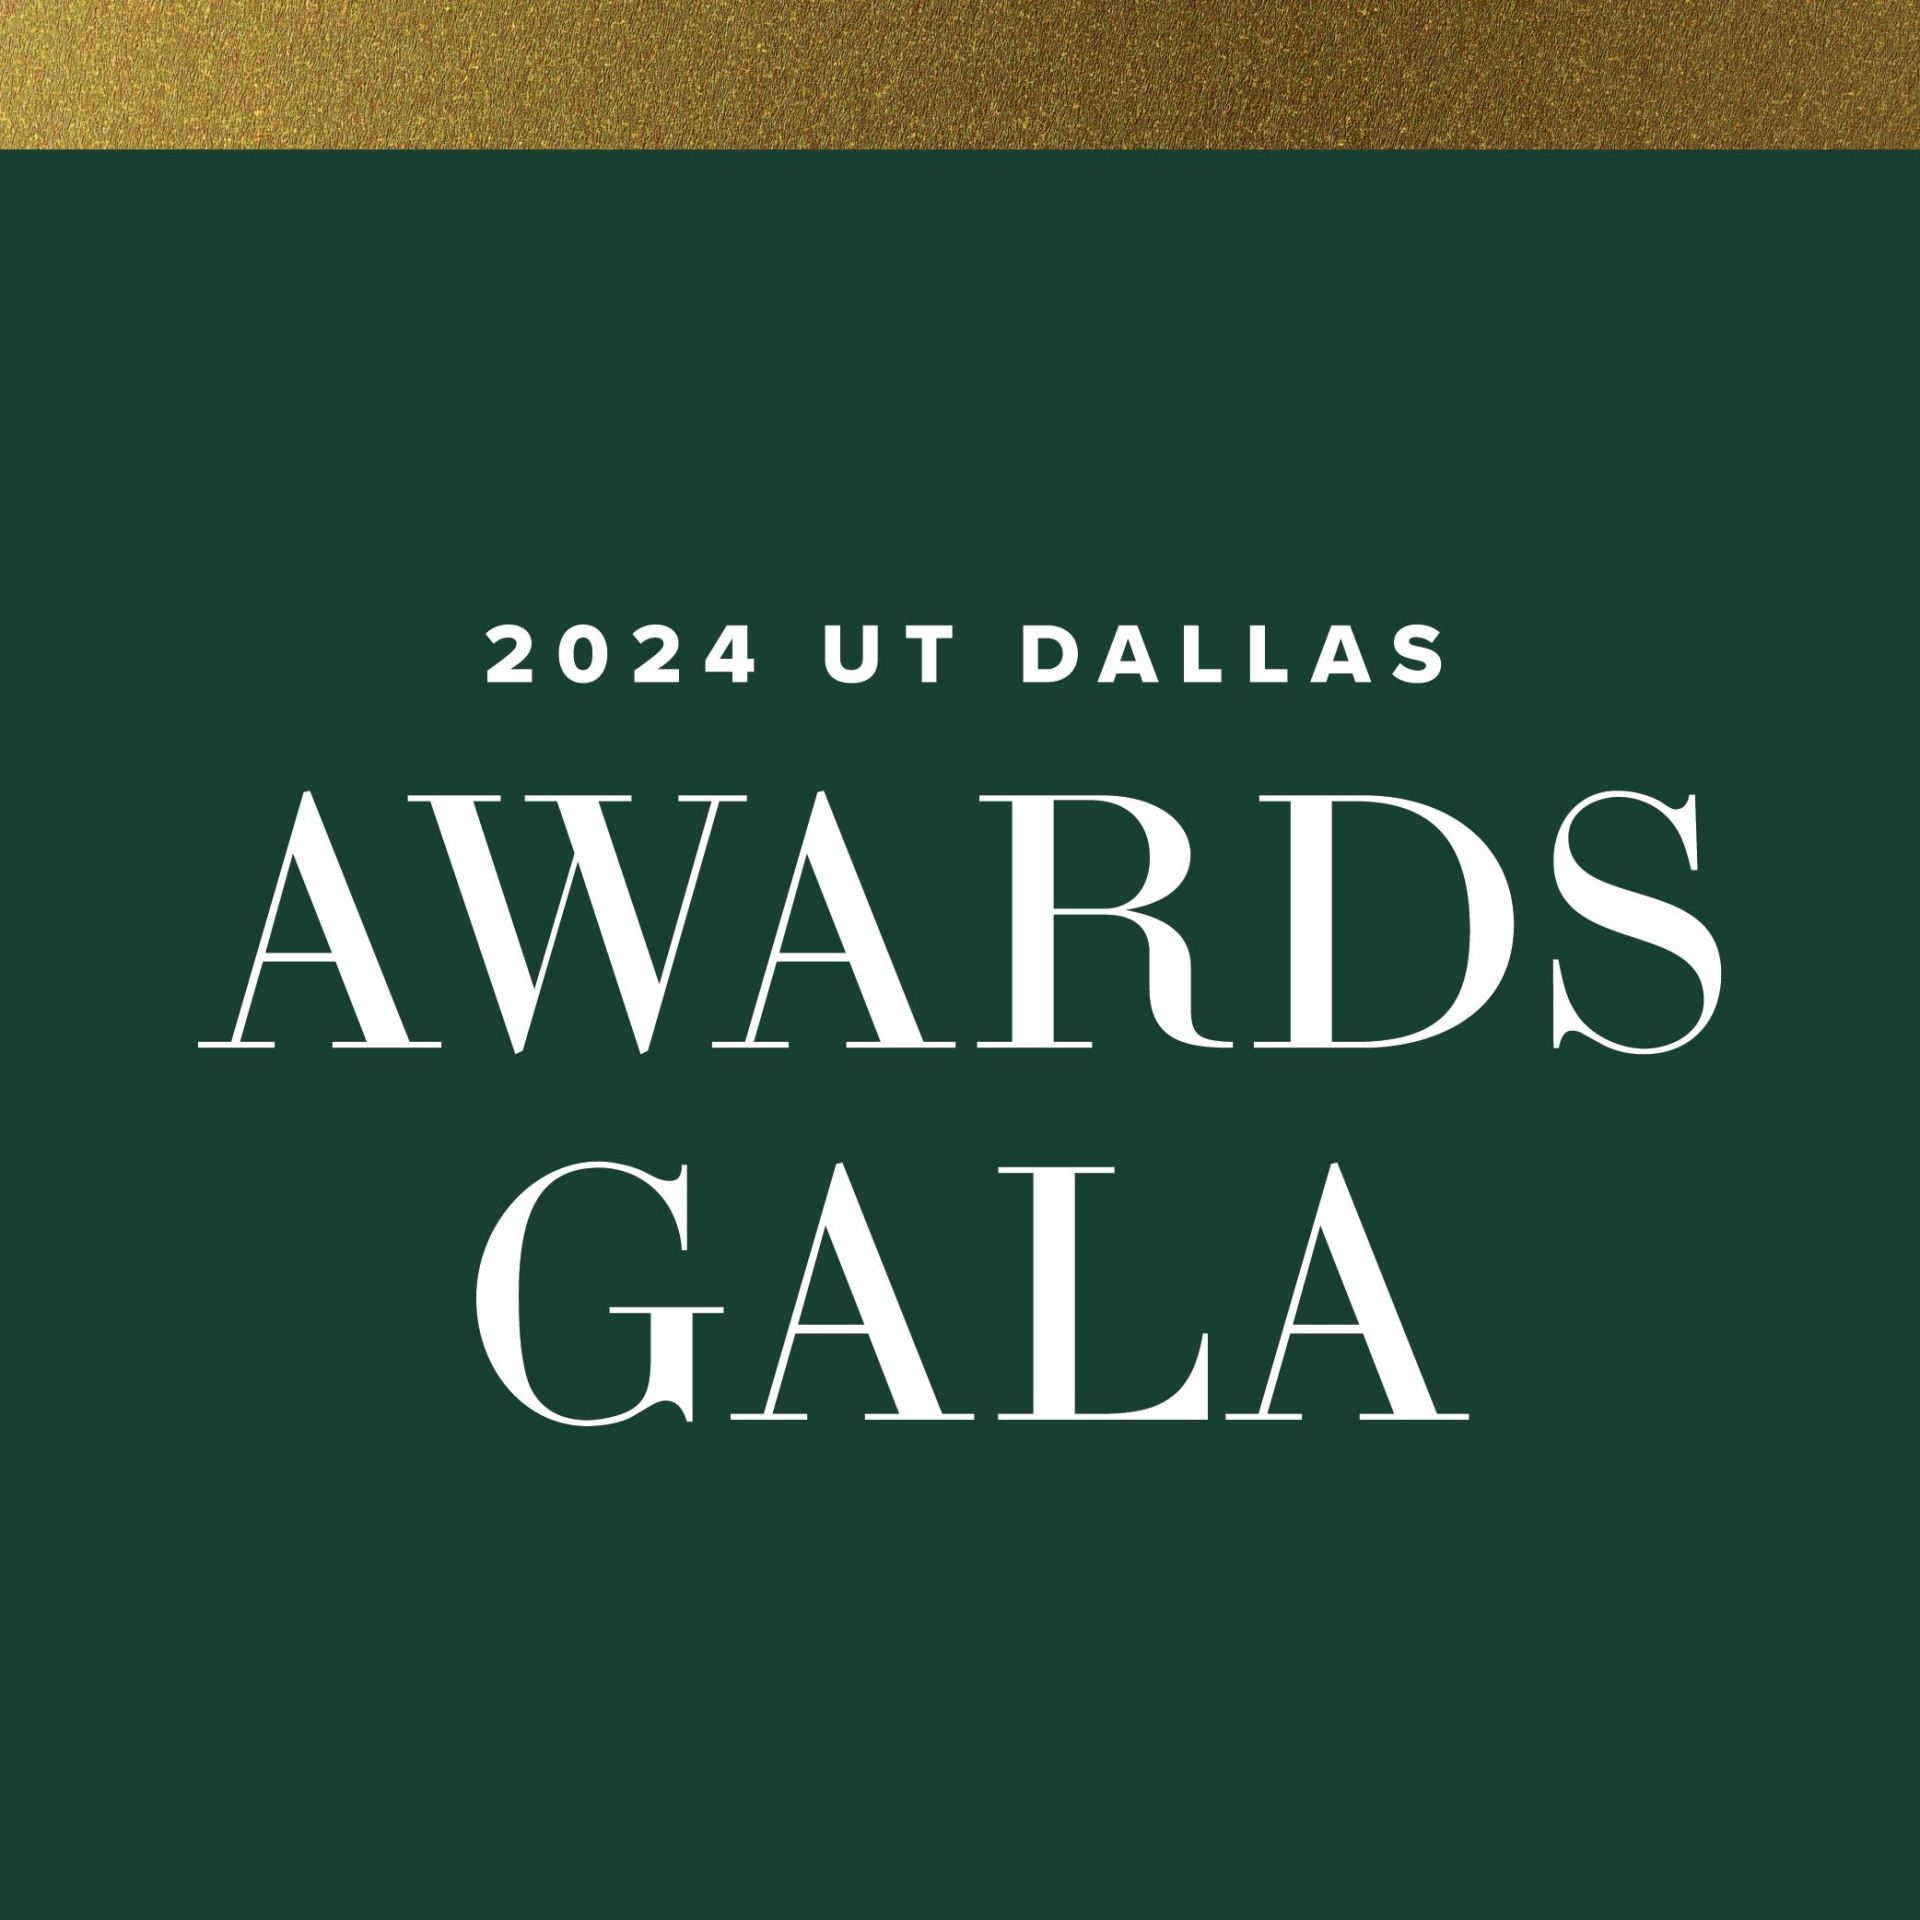 2024 UT Dallas Awards Gala.